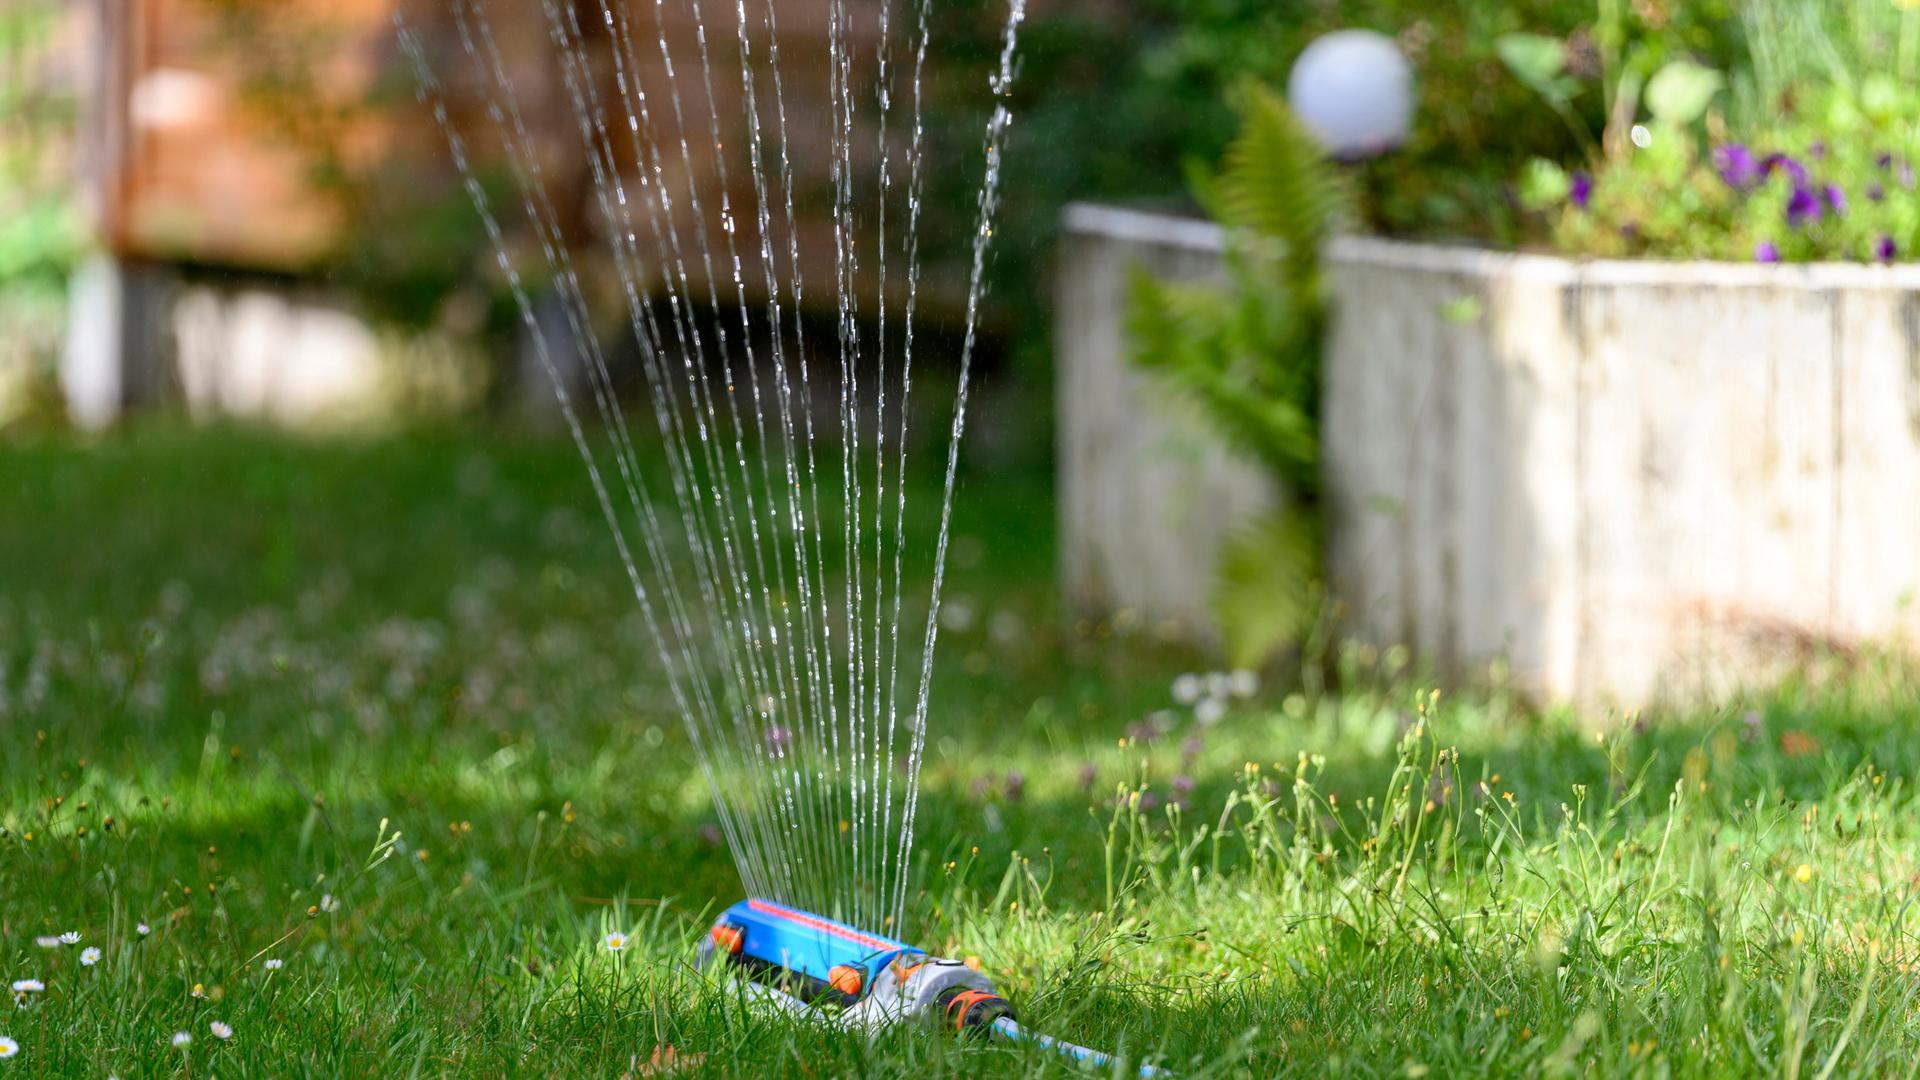 In einem Garten wird der Rasen mit einem Wassersprenger bewässert. Aus dem Wassersprenger kommen mehrere Wasserstrahlen.